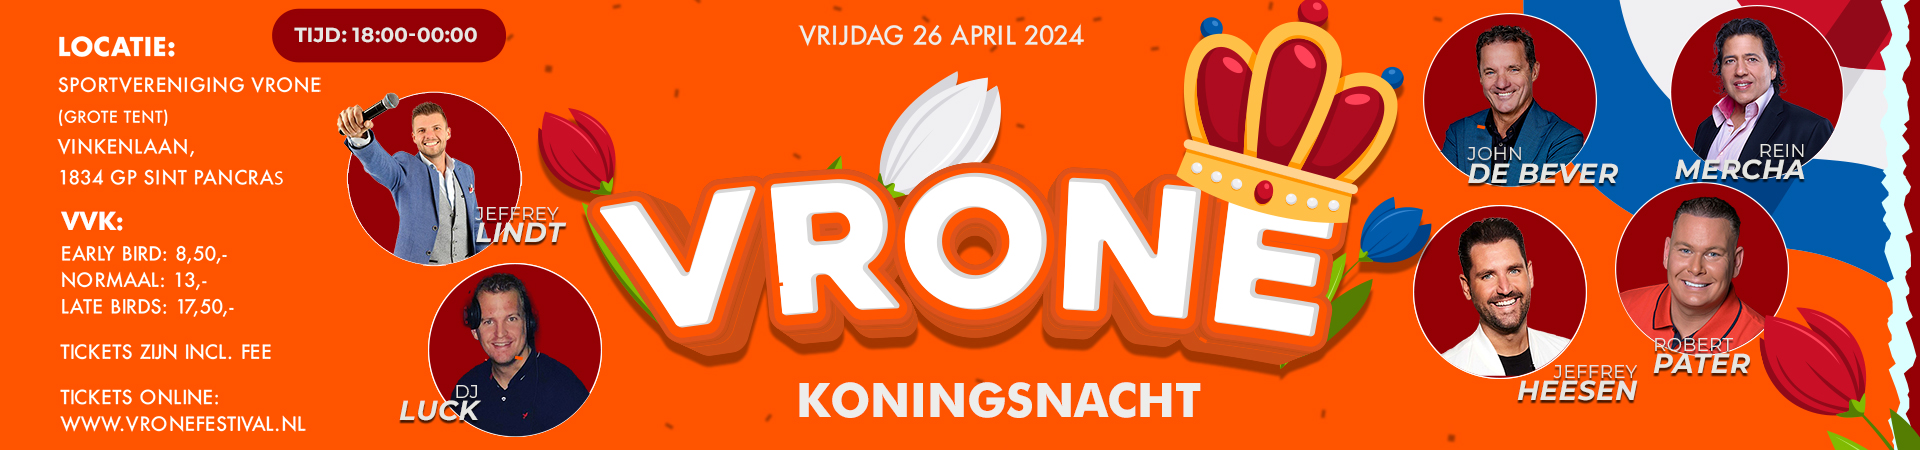 Vrone Festival Koningsavond tickets 2024